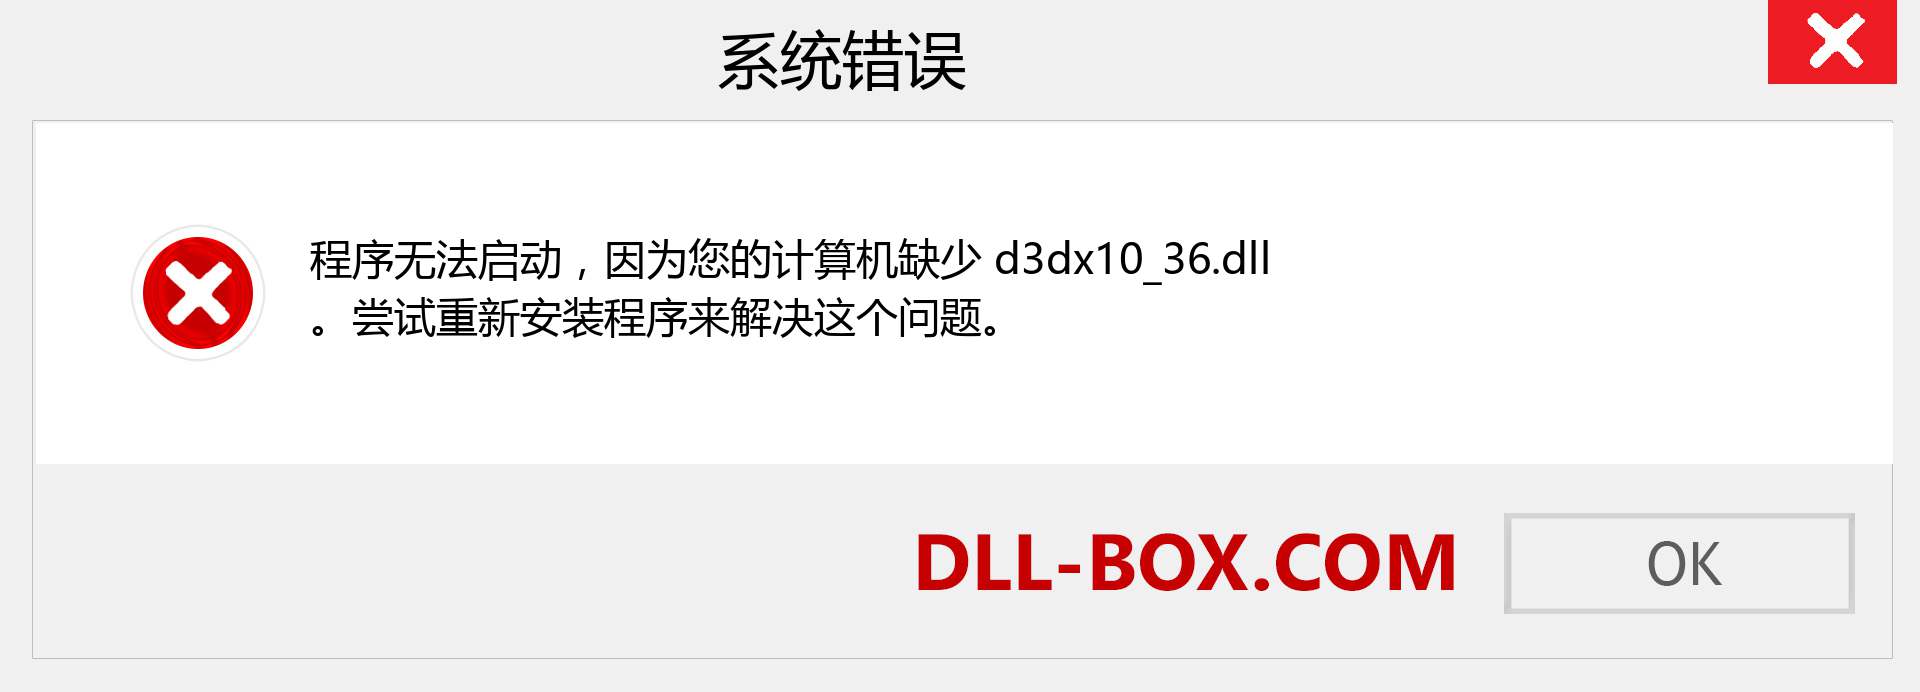 d3dx10_36.dll 文件丢失？。 适用于 Windows 7、8、10 的下载 - 修复 Windows、照片、图像上的 d3dx10_36 dll 丢失错误